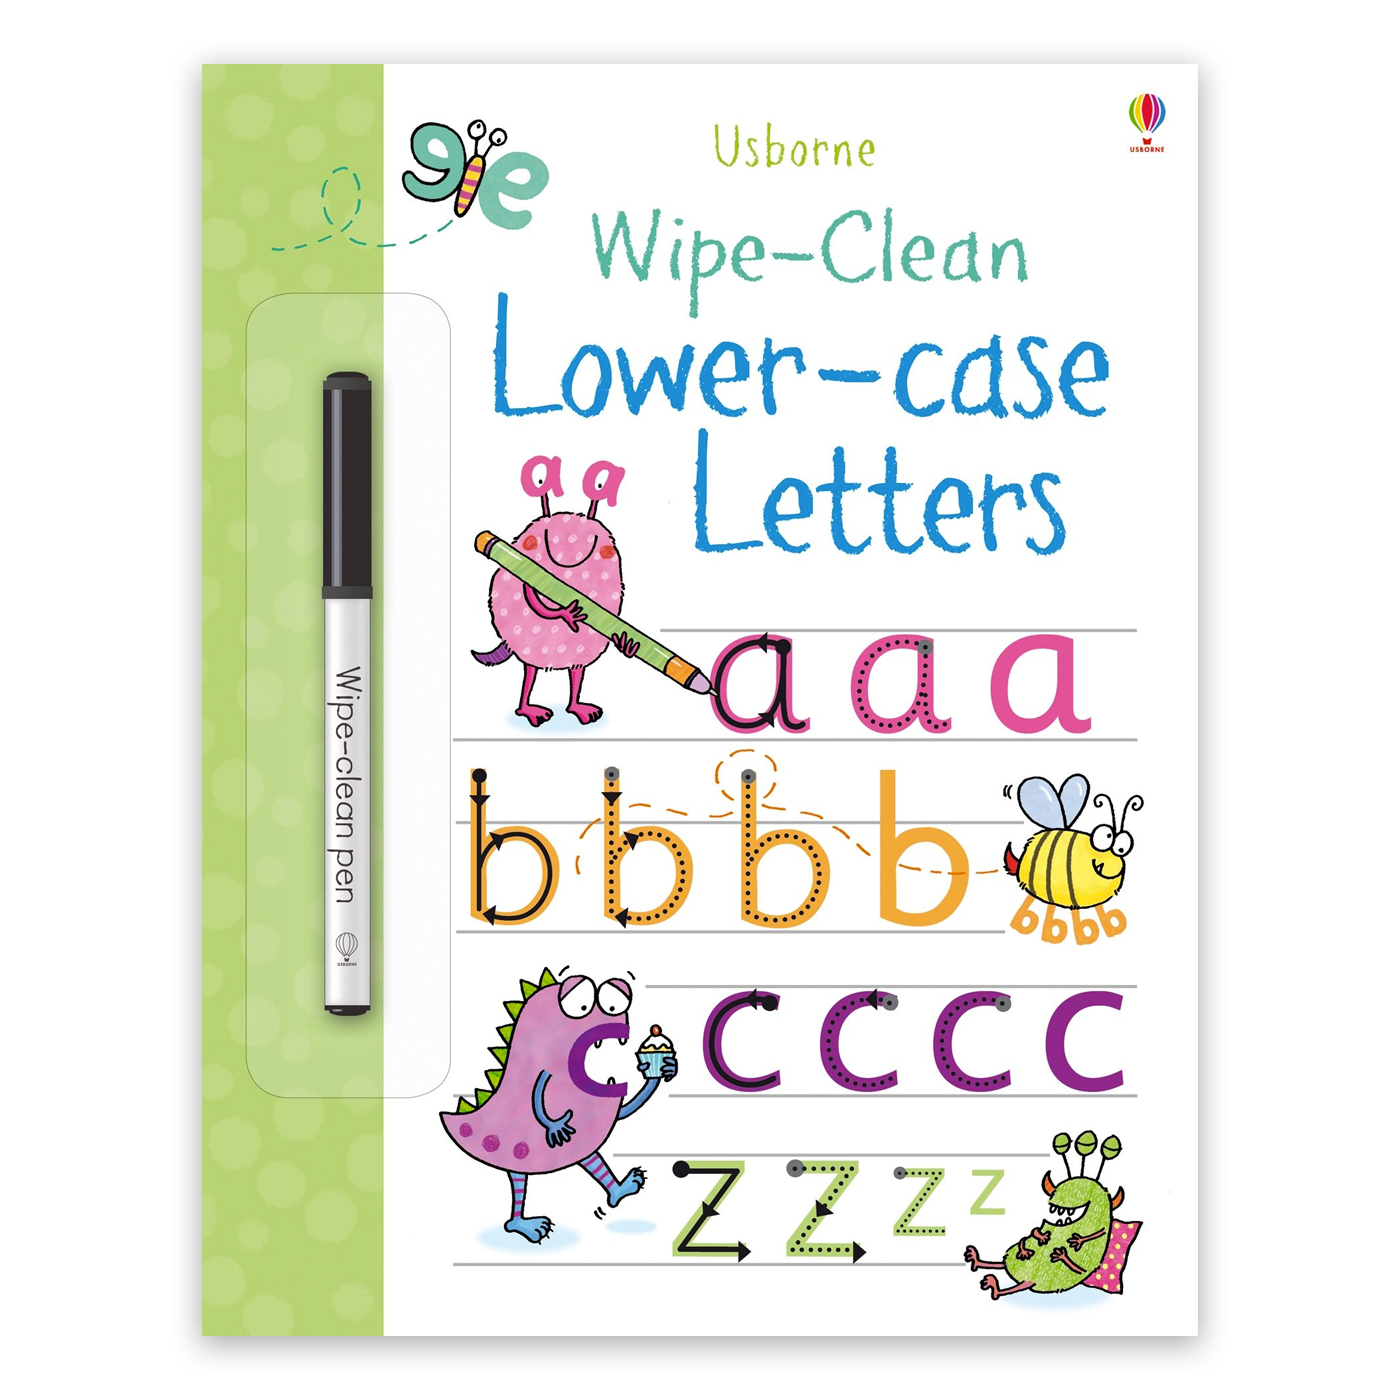 USBORNE Wipe-Clean Lower-case Letters